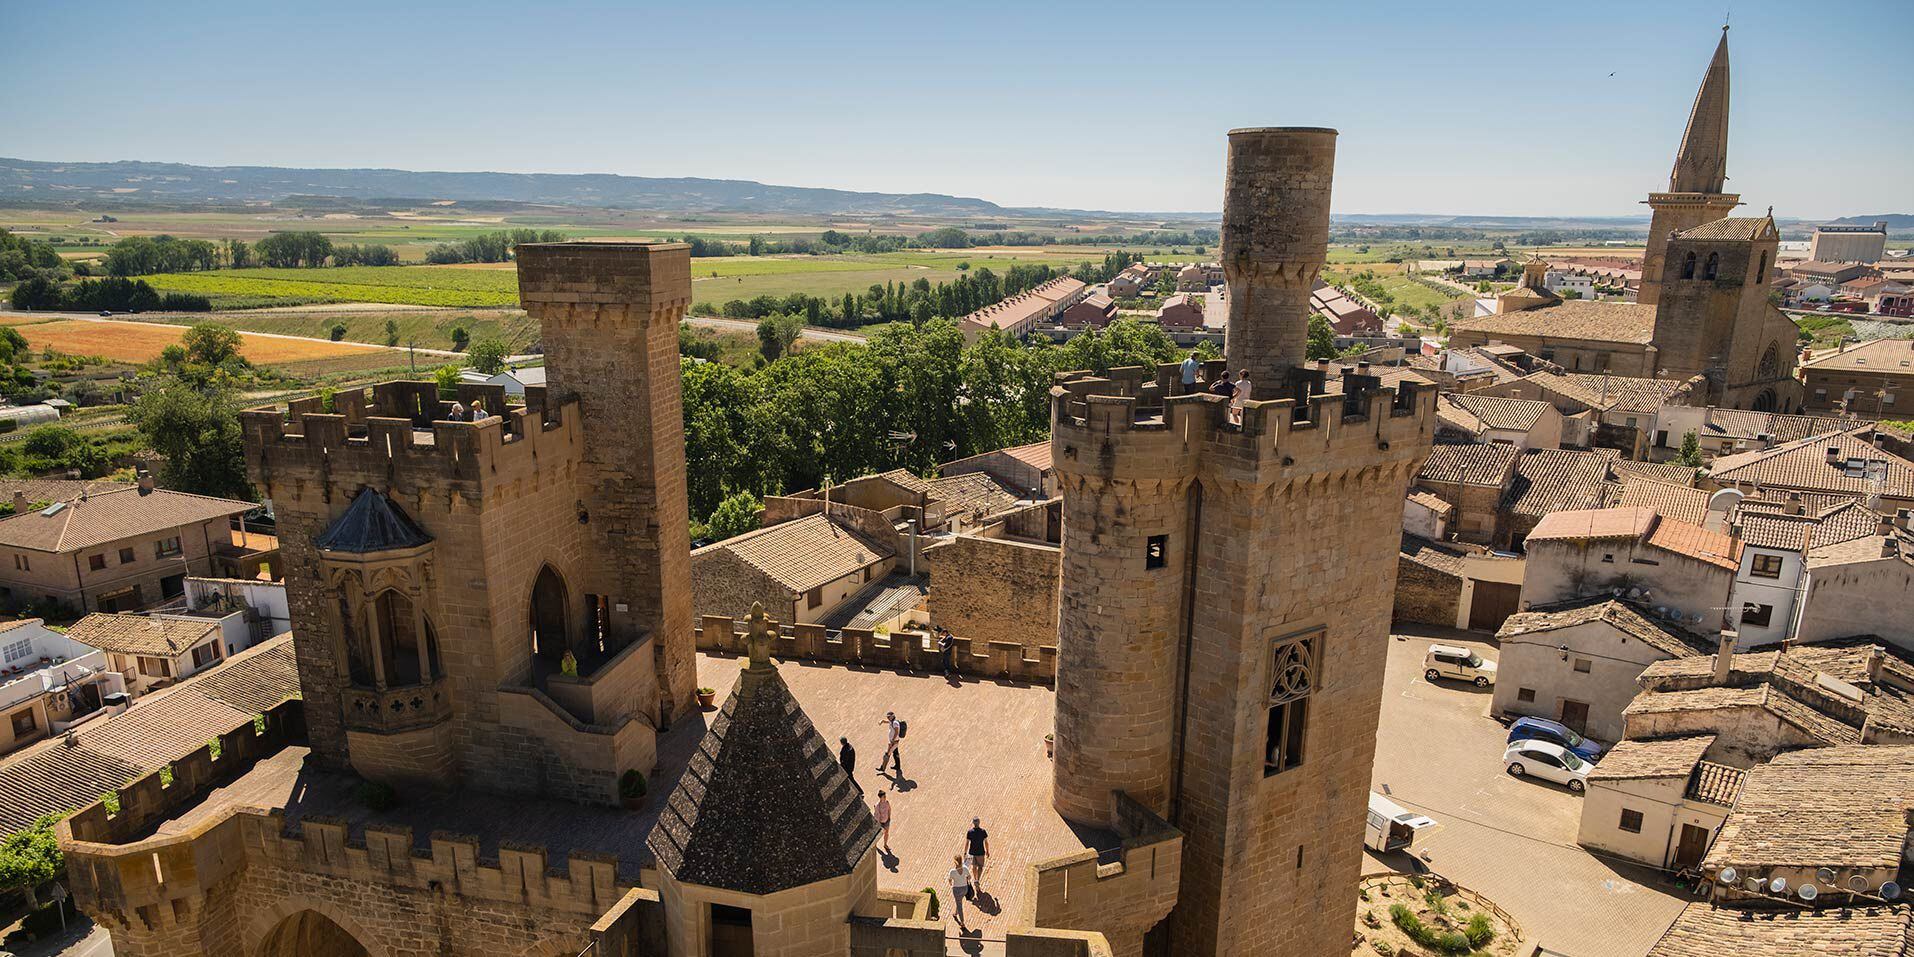 Castillo de Olite, Navarra